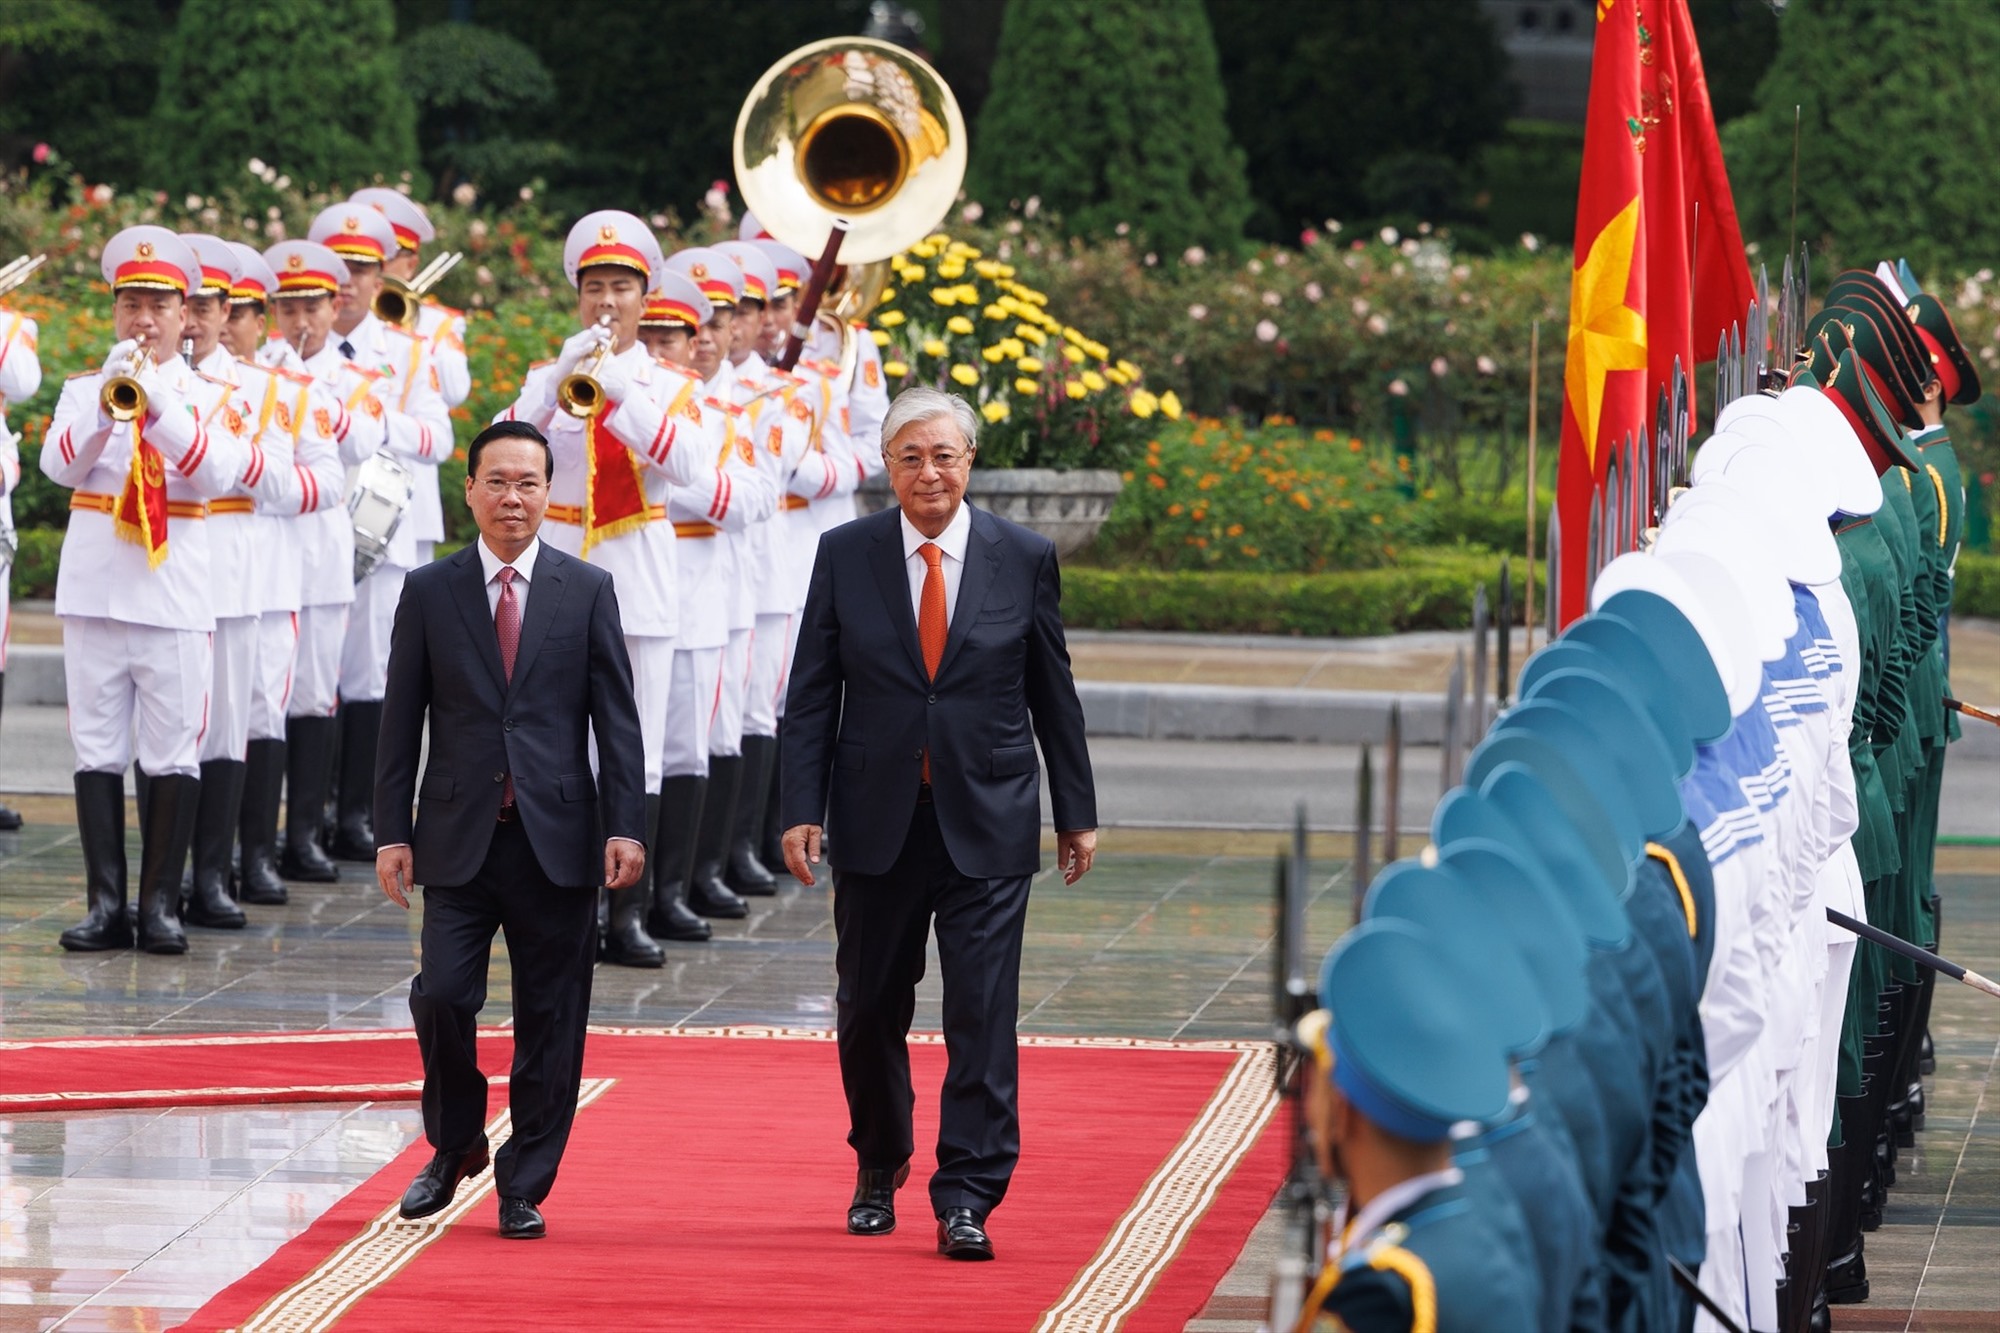 Đây là lần đầu tiên ông Kassym-Jomart Tokayev đến Việt Nam trên cương vị mới, cũng là chuyến thăm đầu tiên của một Tổng thống Kazakhstan trong 12 năm qua.